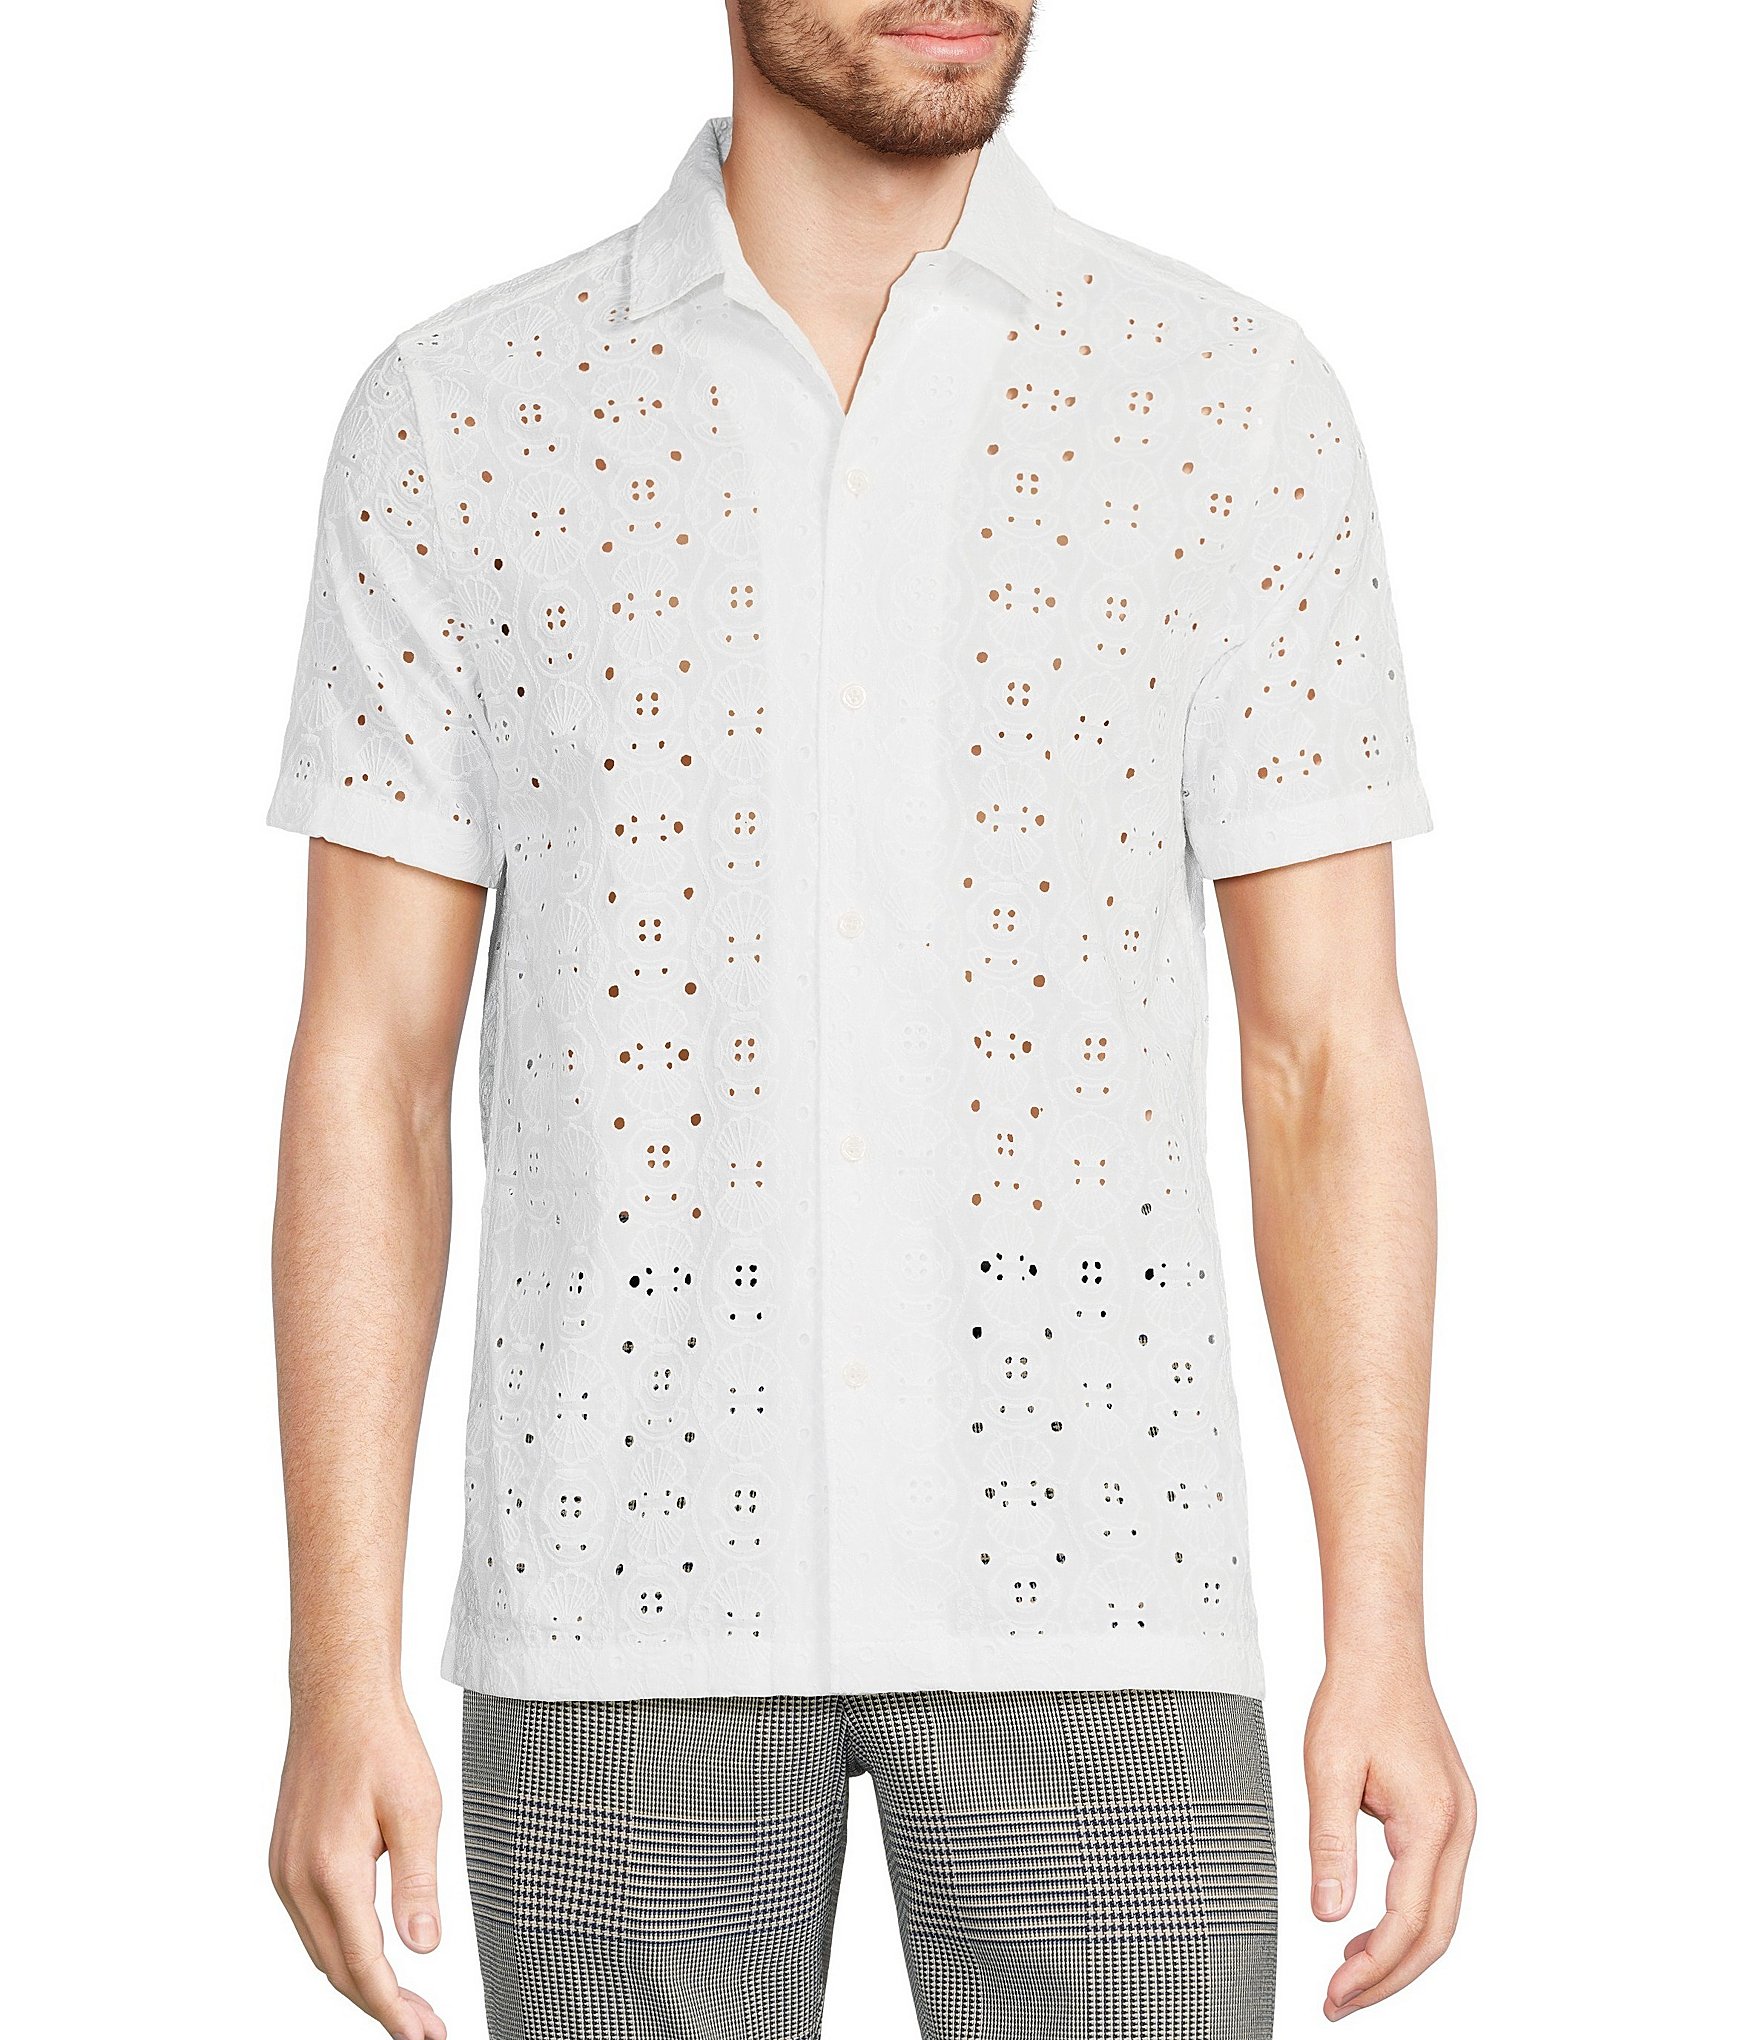 Cino | St Lucia White Eyelet Button Down Shirt | Medium - White